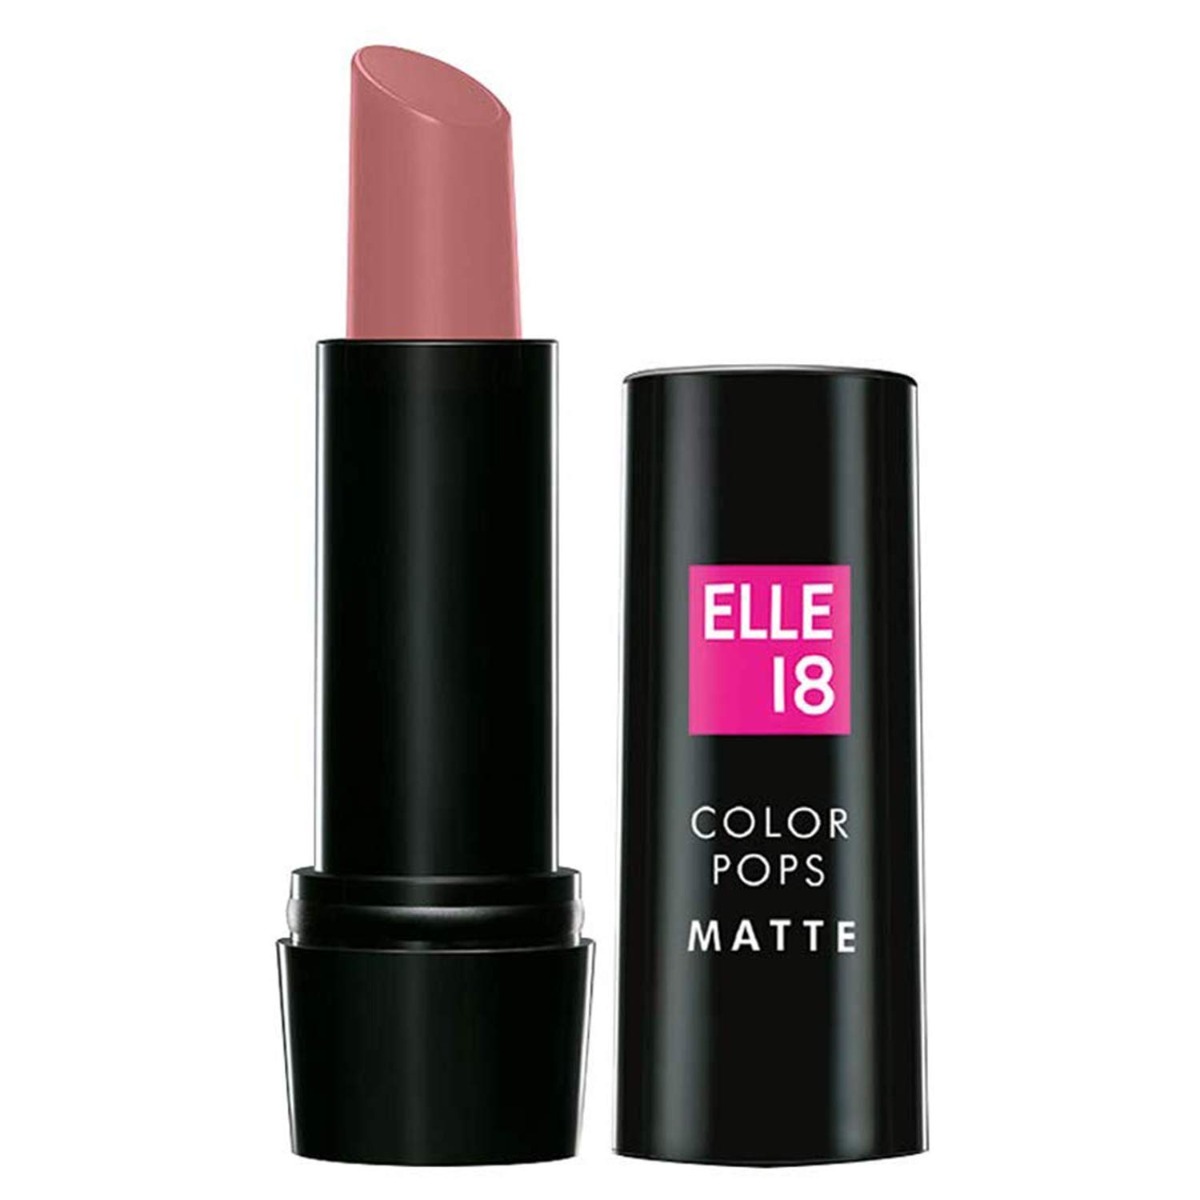 Elle18 Color Pops Matte Lipstick N51 Nude Fix, 4.3 g-0